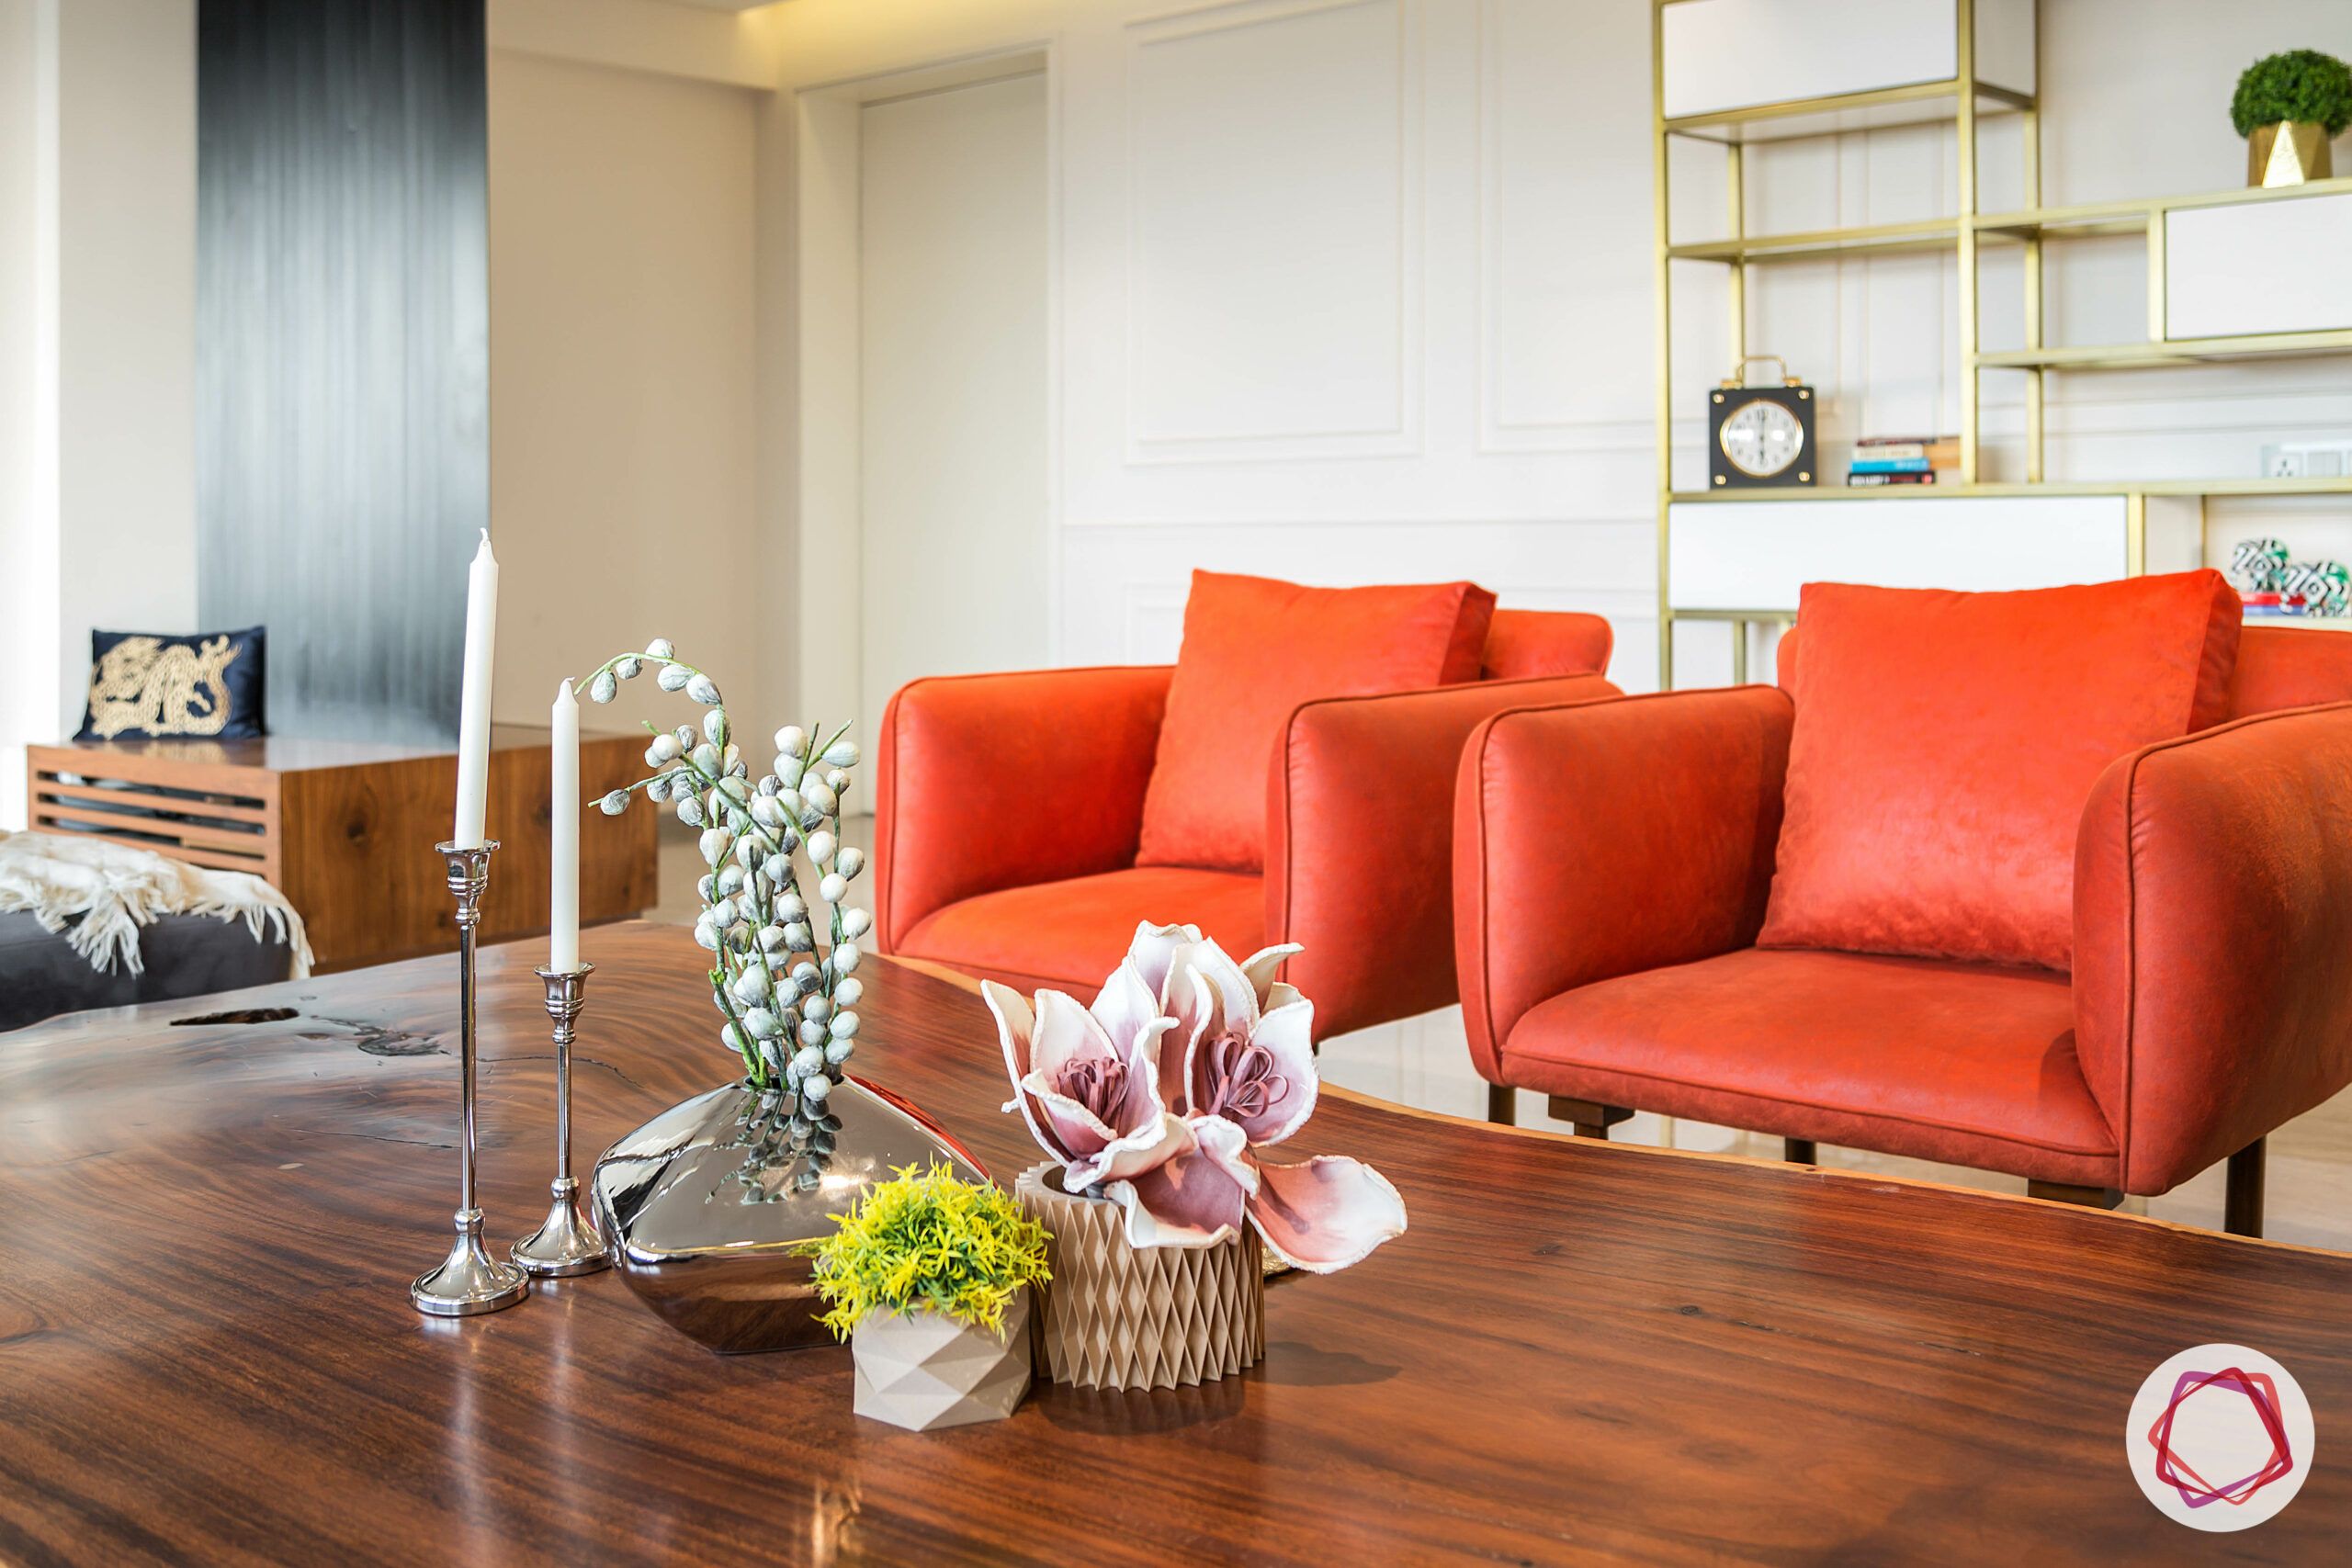 club-chair-orange-living-room-coffee-table